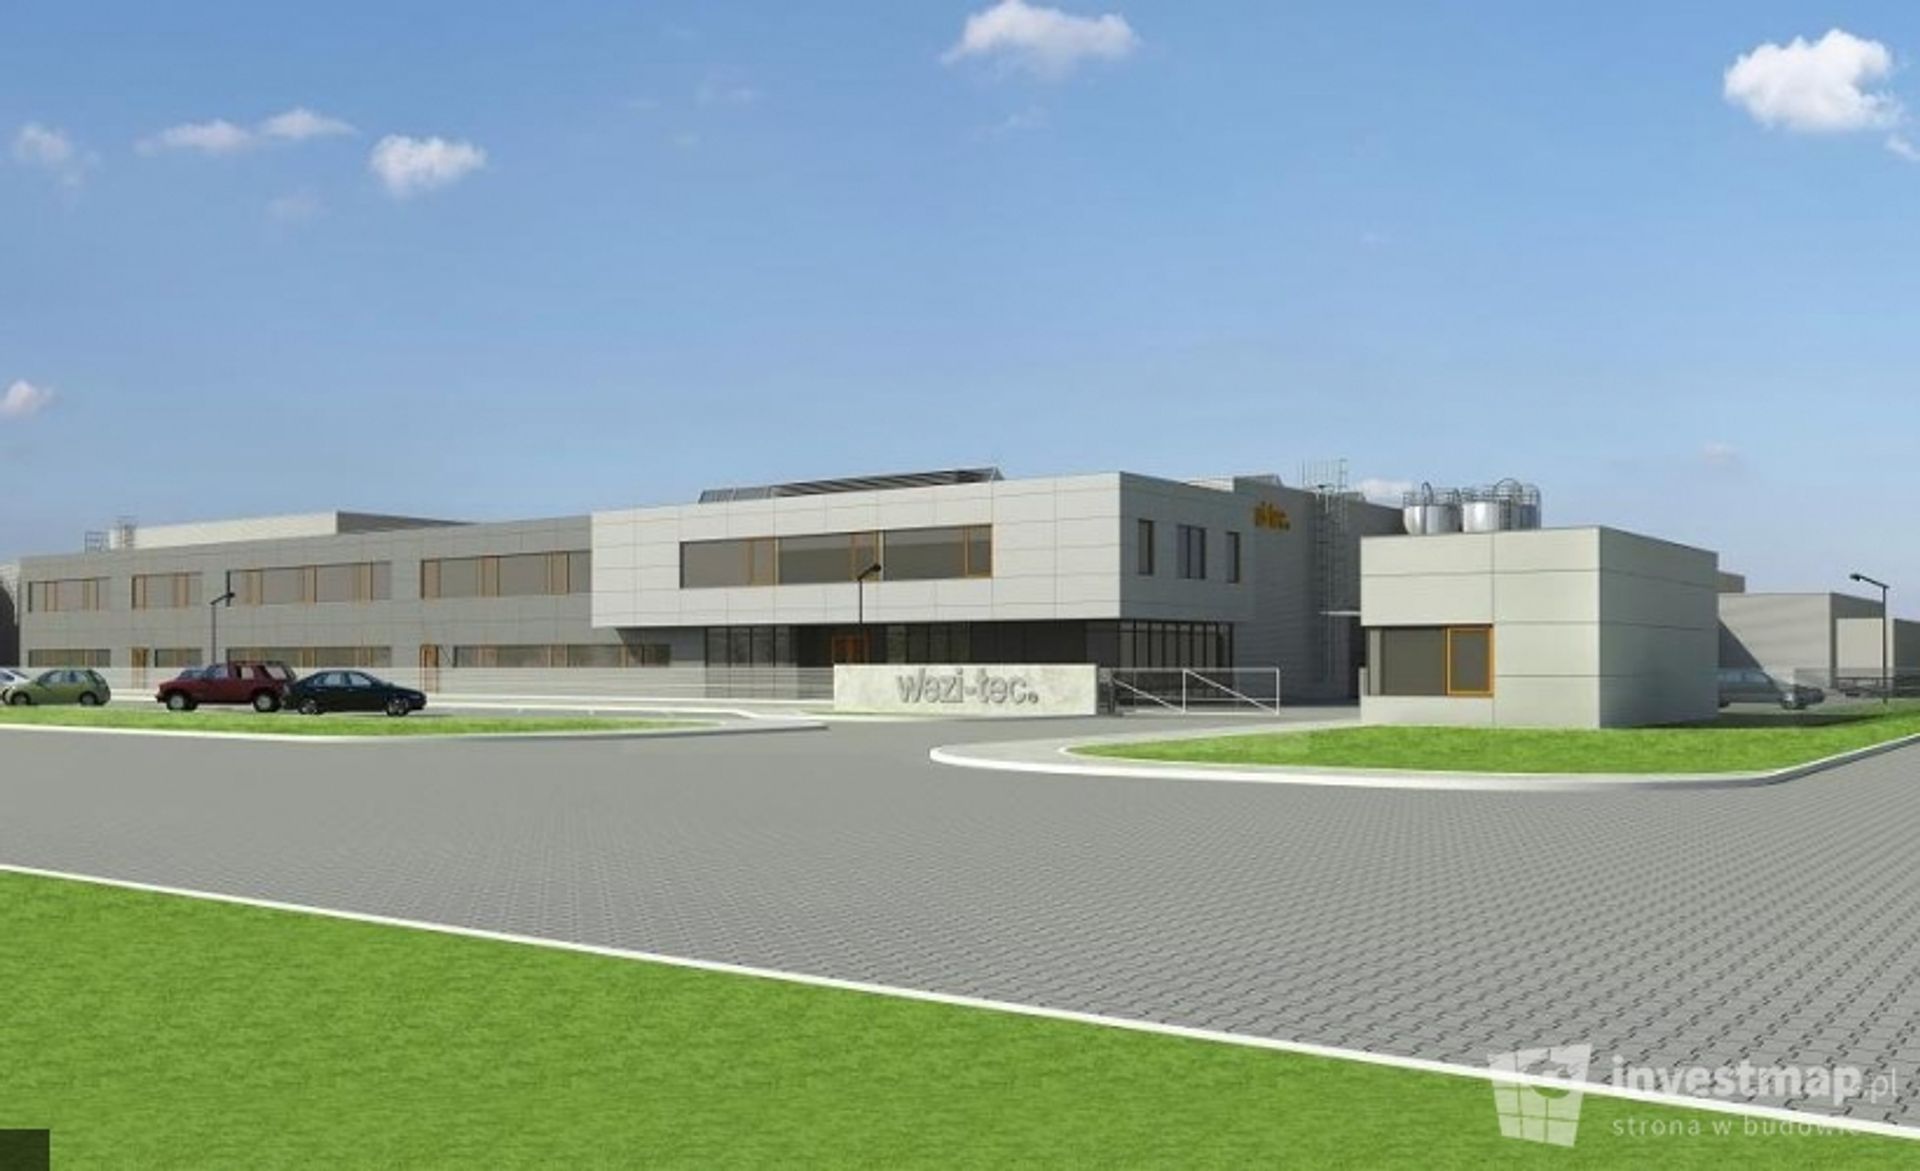  Rembor General rozbuduje fabrykę niemieckiej firmy Wezi-tec w Legnicy